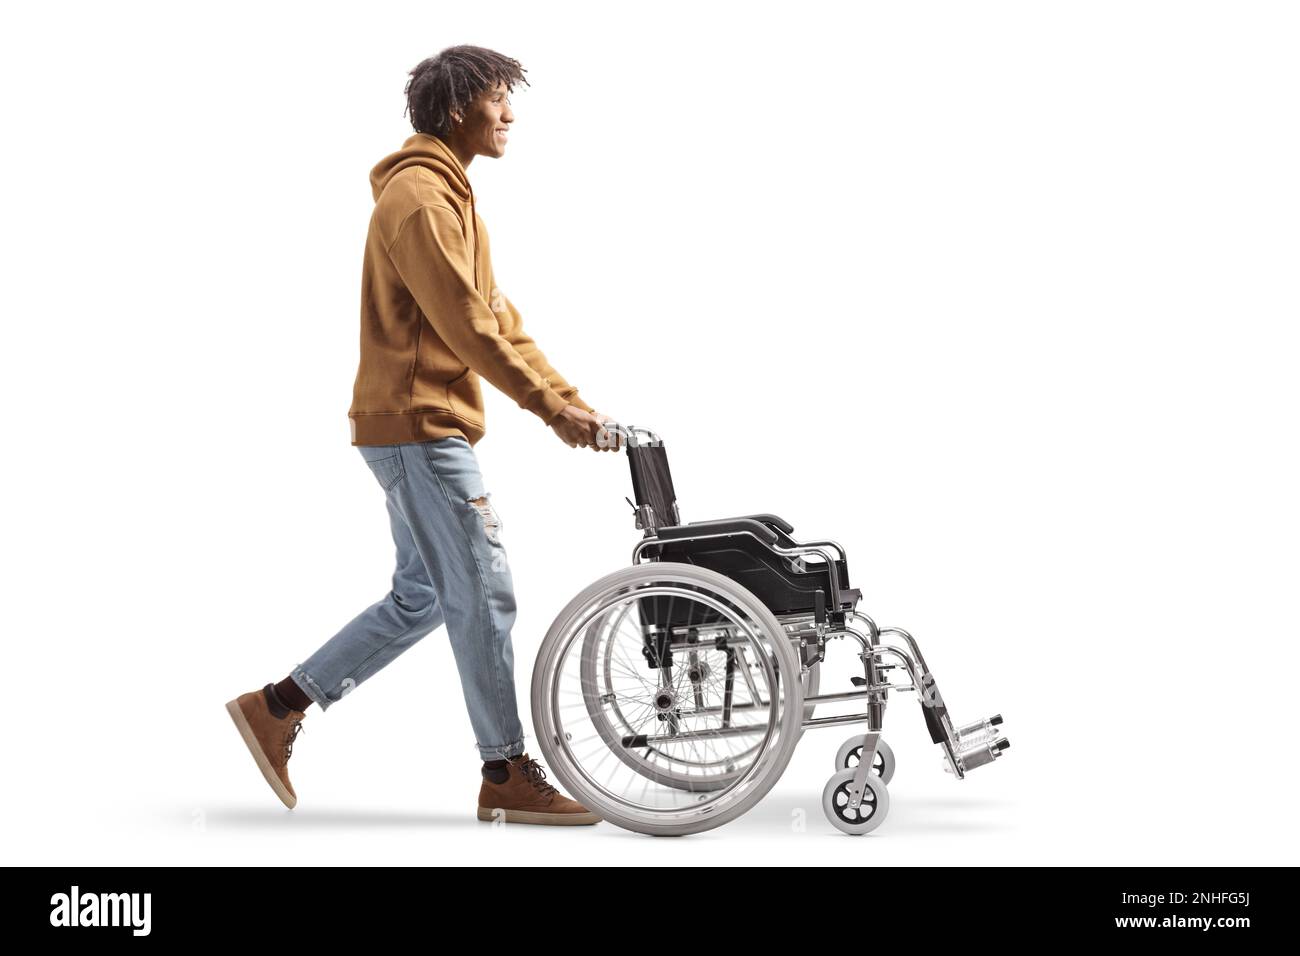 Profilo a tutta lunghezza di un giovane afro-americano che spinge una sedia a rotelle vuota isolata su sfondo bianco Foto Stock